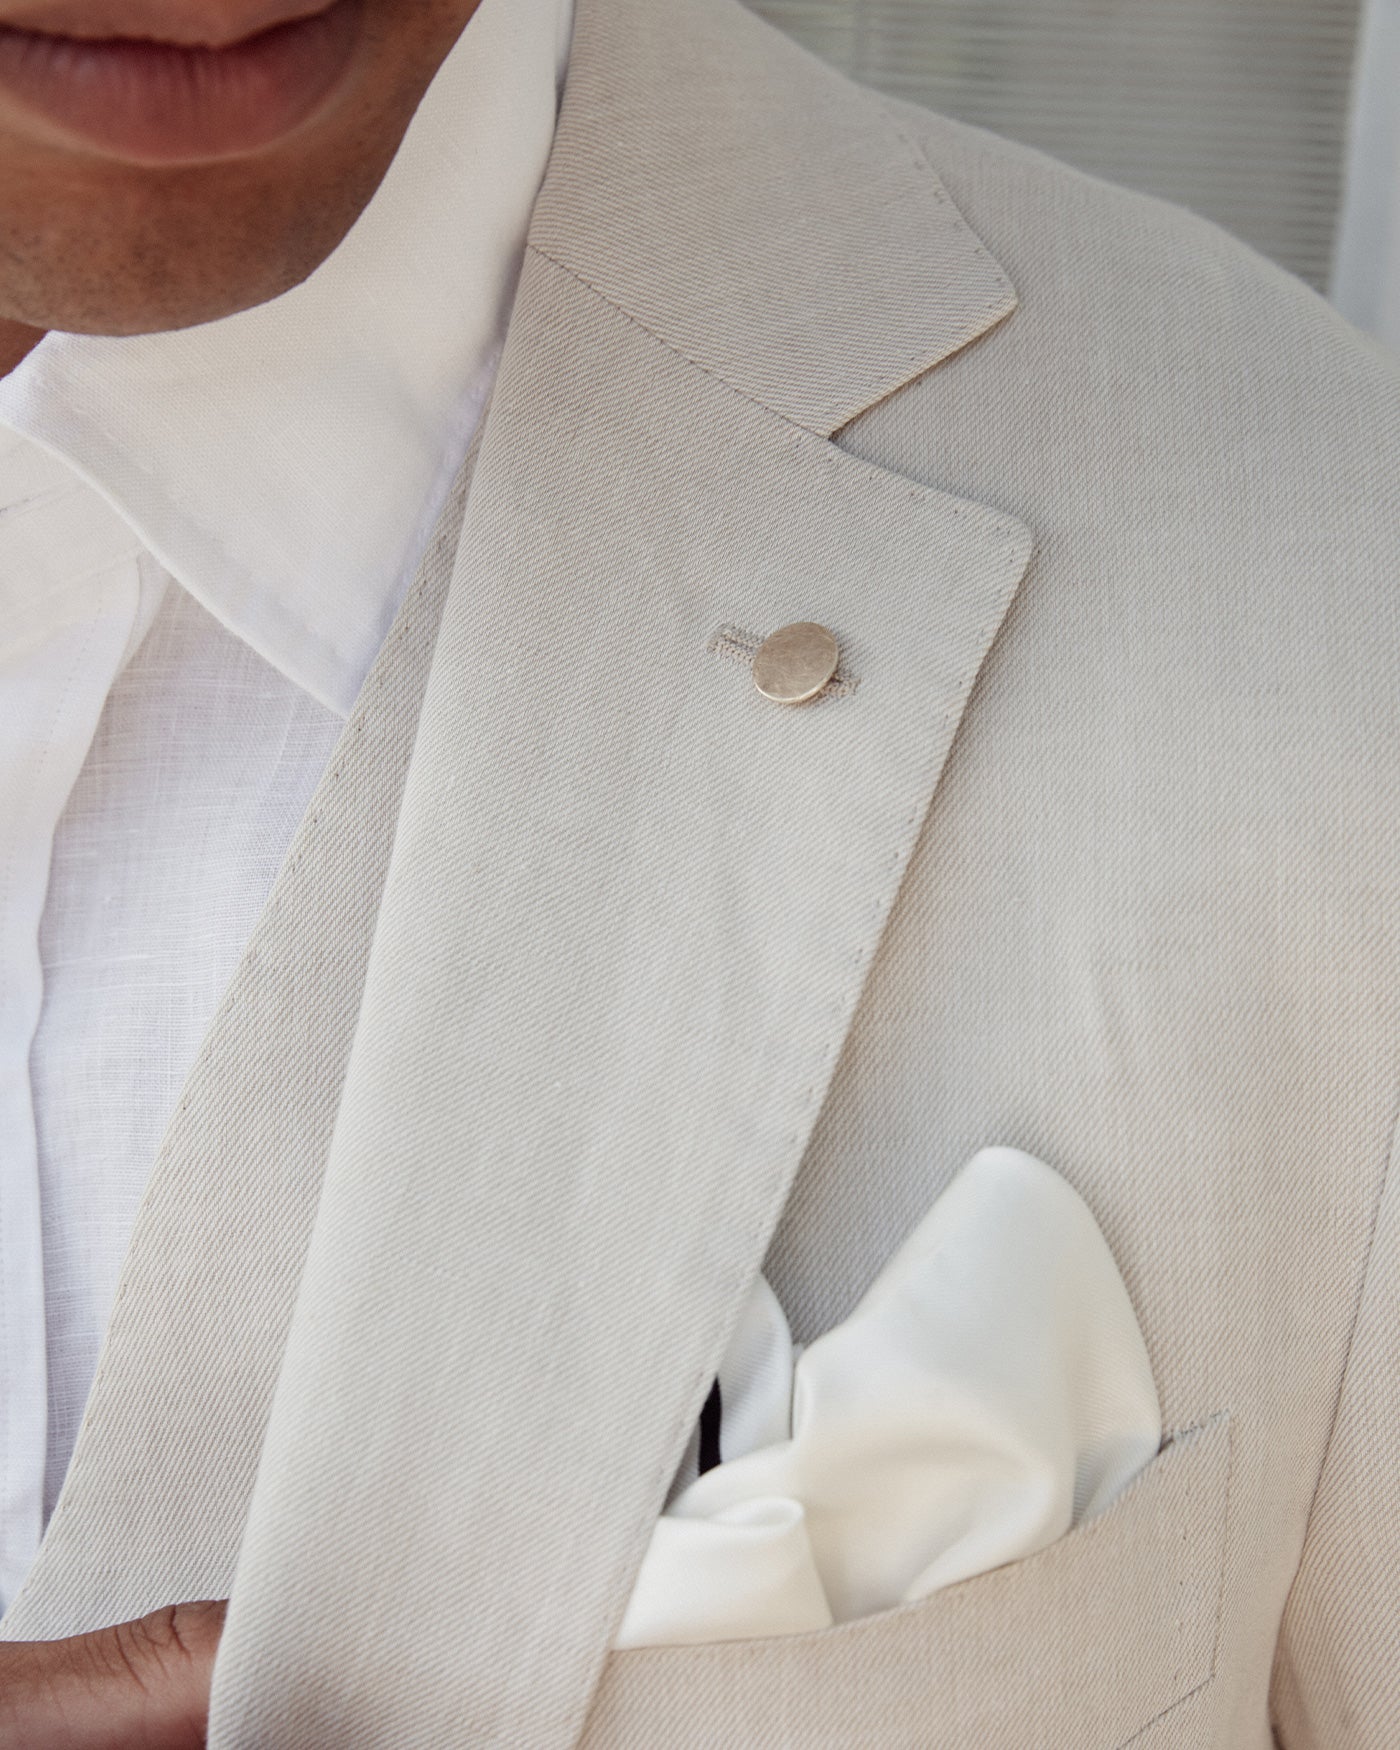 man wearing matte gold lapel pin